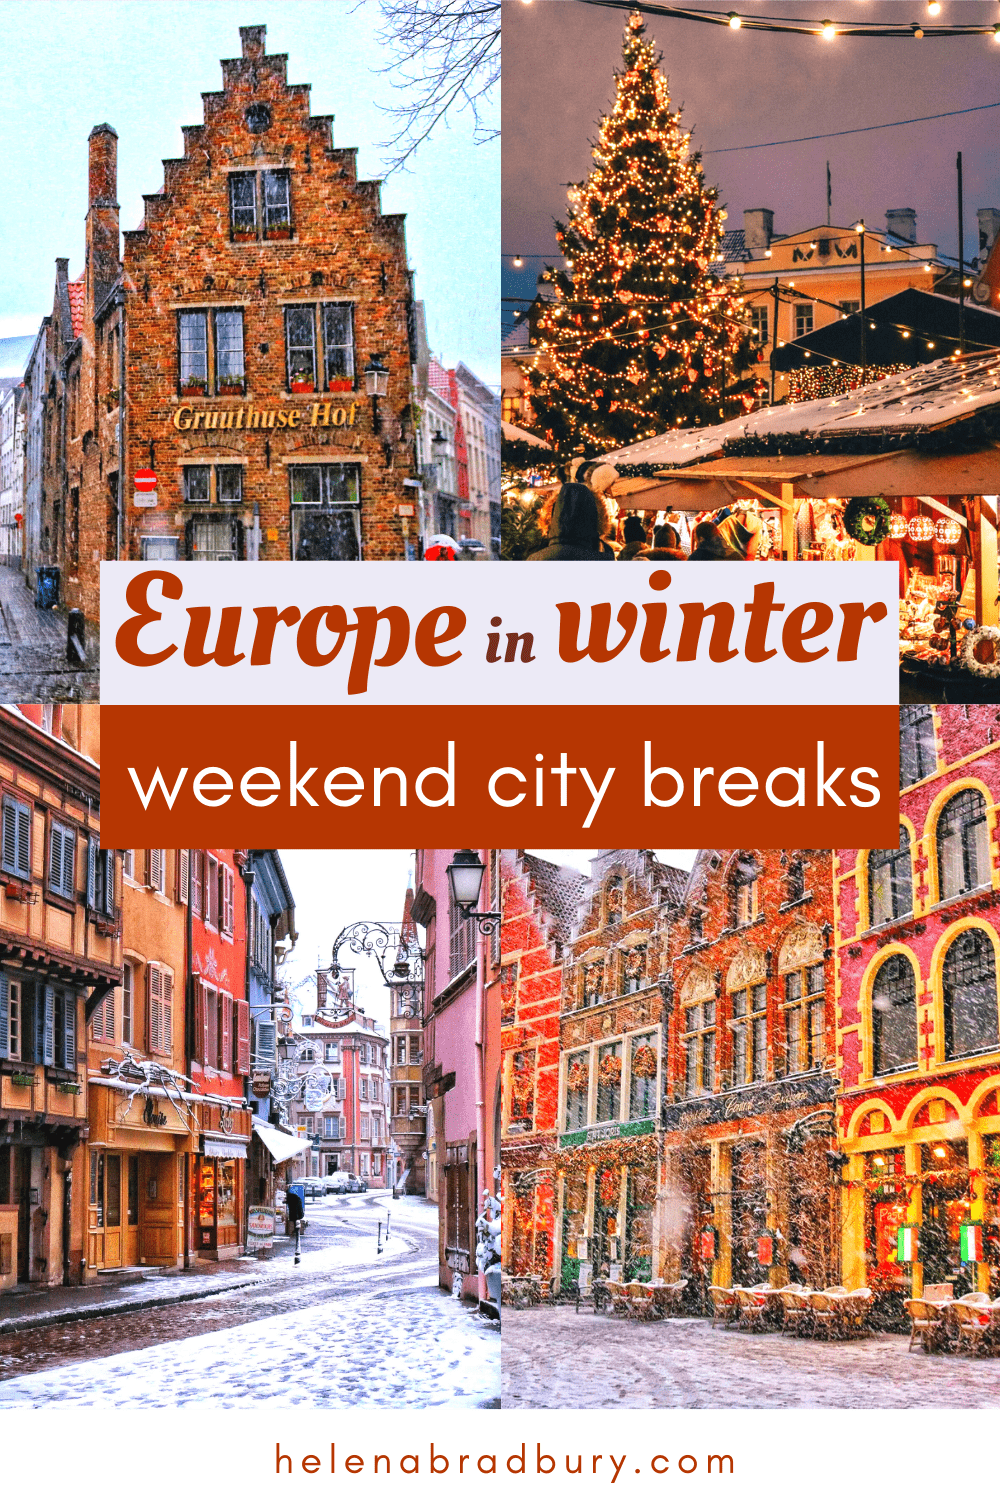 The best winter weekend getaways in Europe